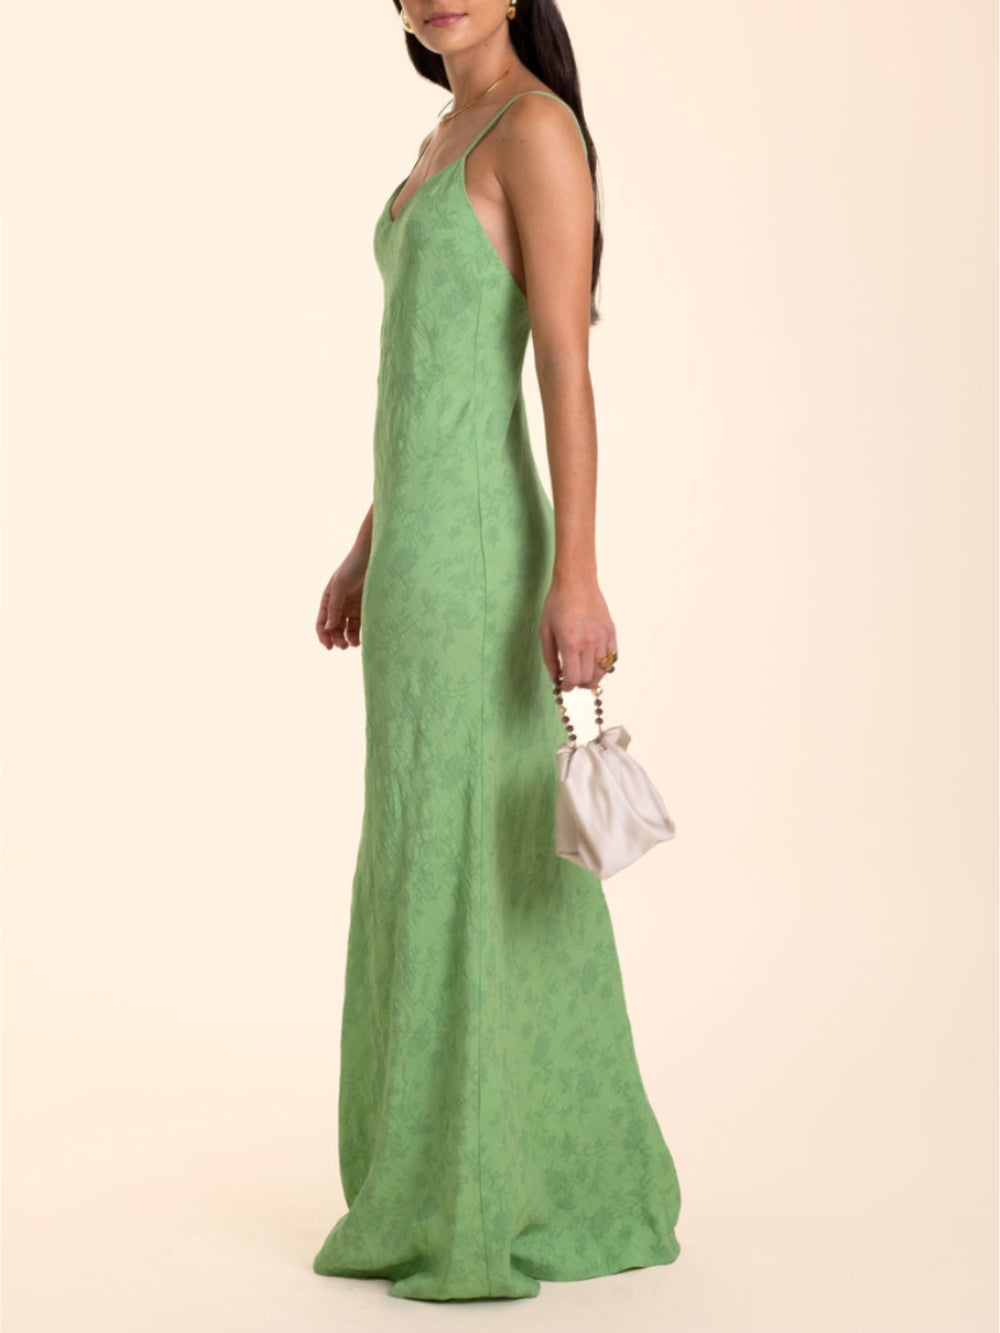 Elegante vestido maxi jacquard verde limão com decote em V